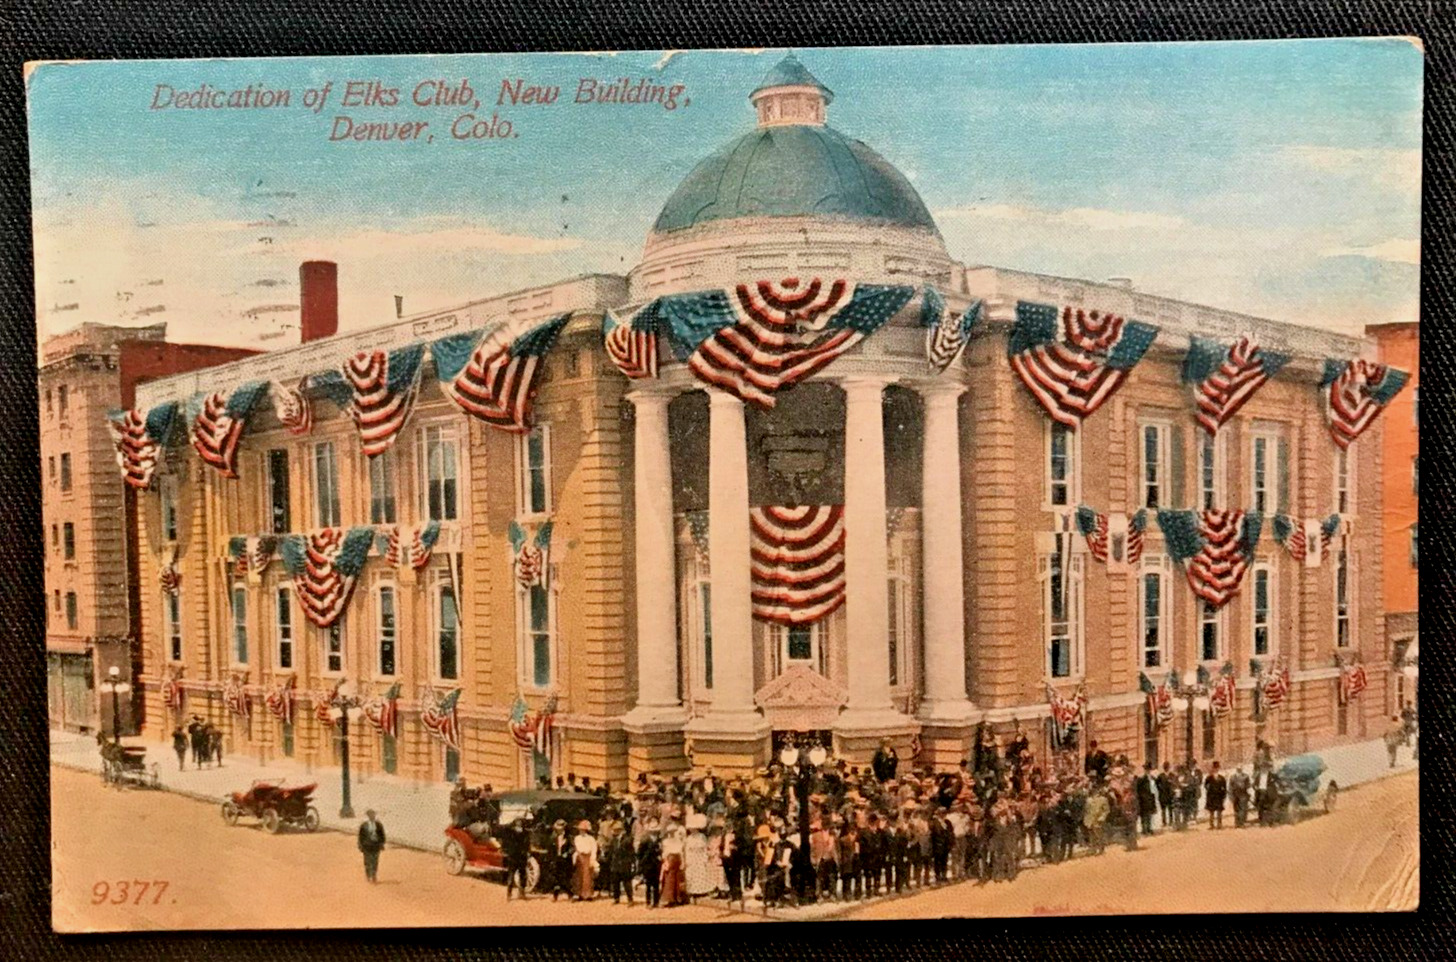 CO - Denver, Colorado, Dedication of Elk's Club New Building, FLAGS, PEOPLE 1913